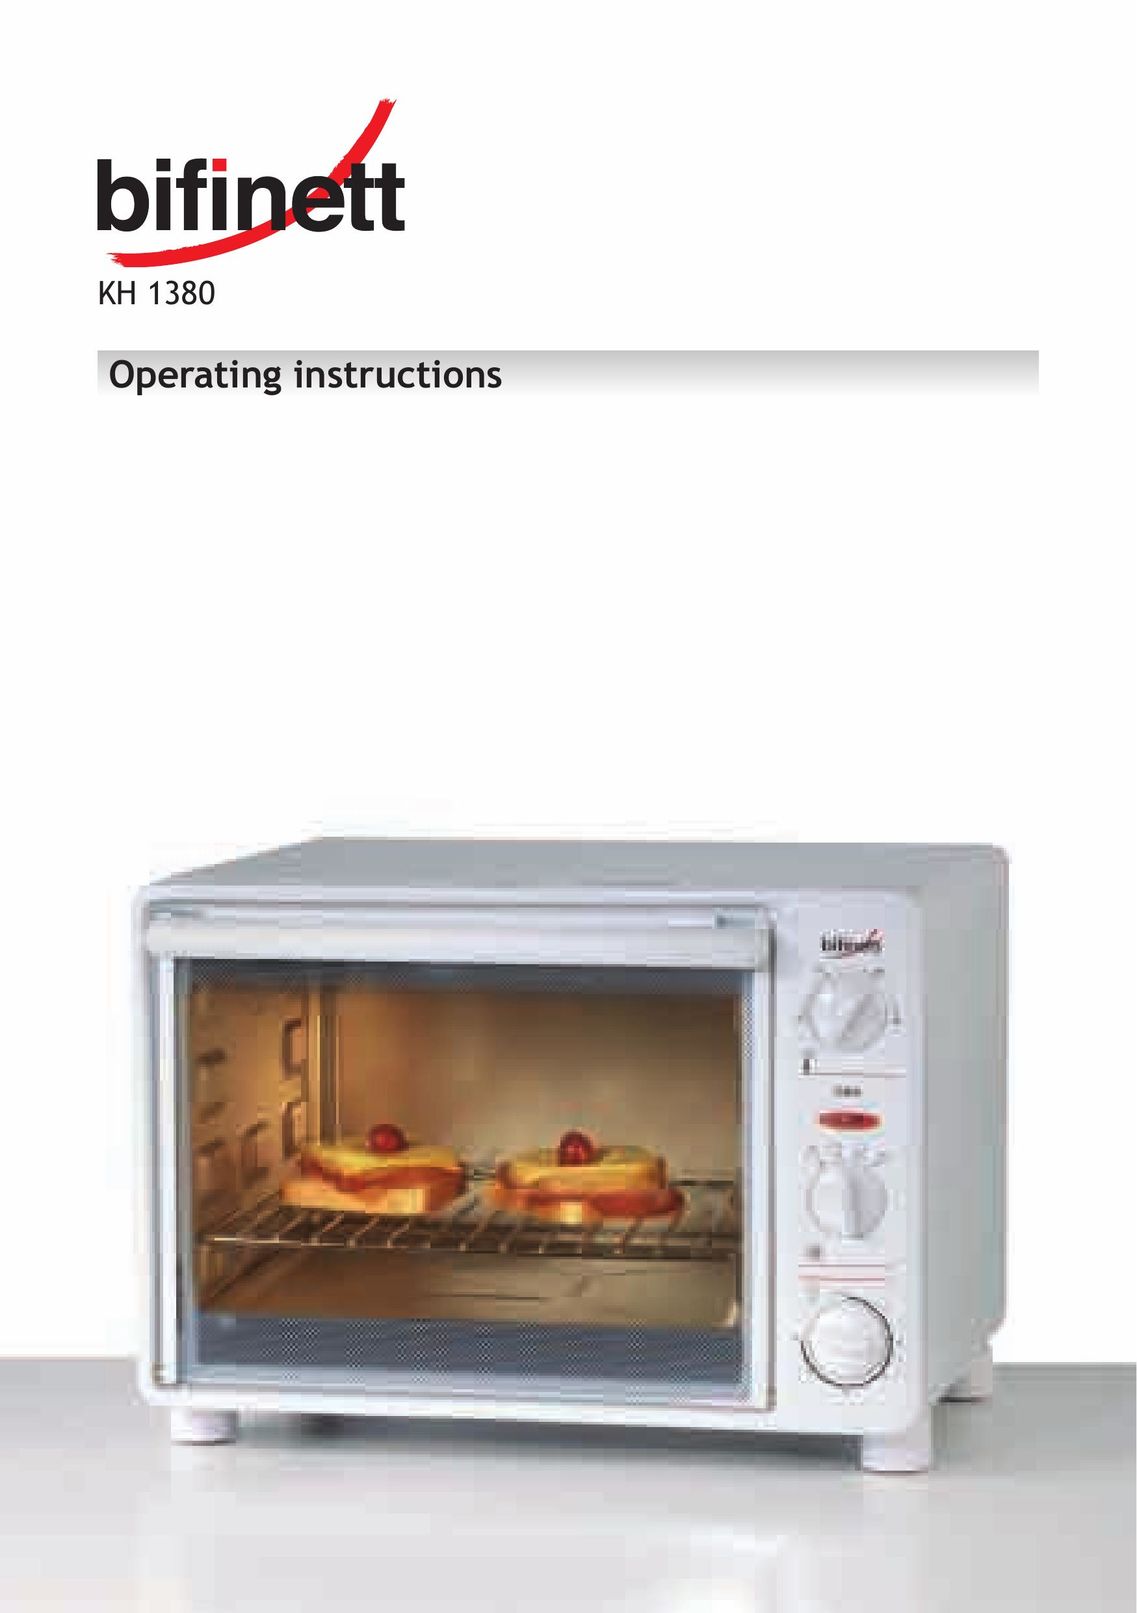 Bifinett KH 1380 Oven User Manual